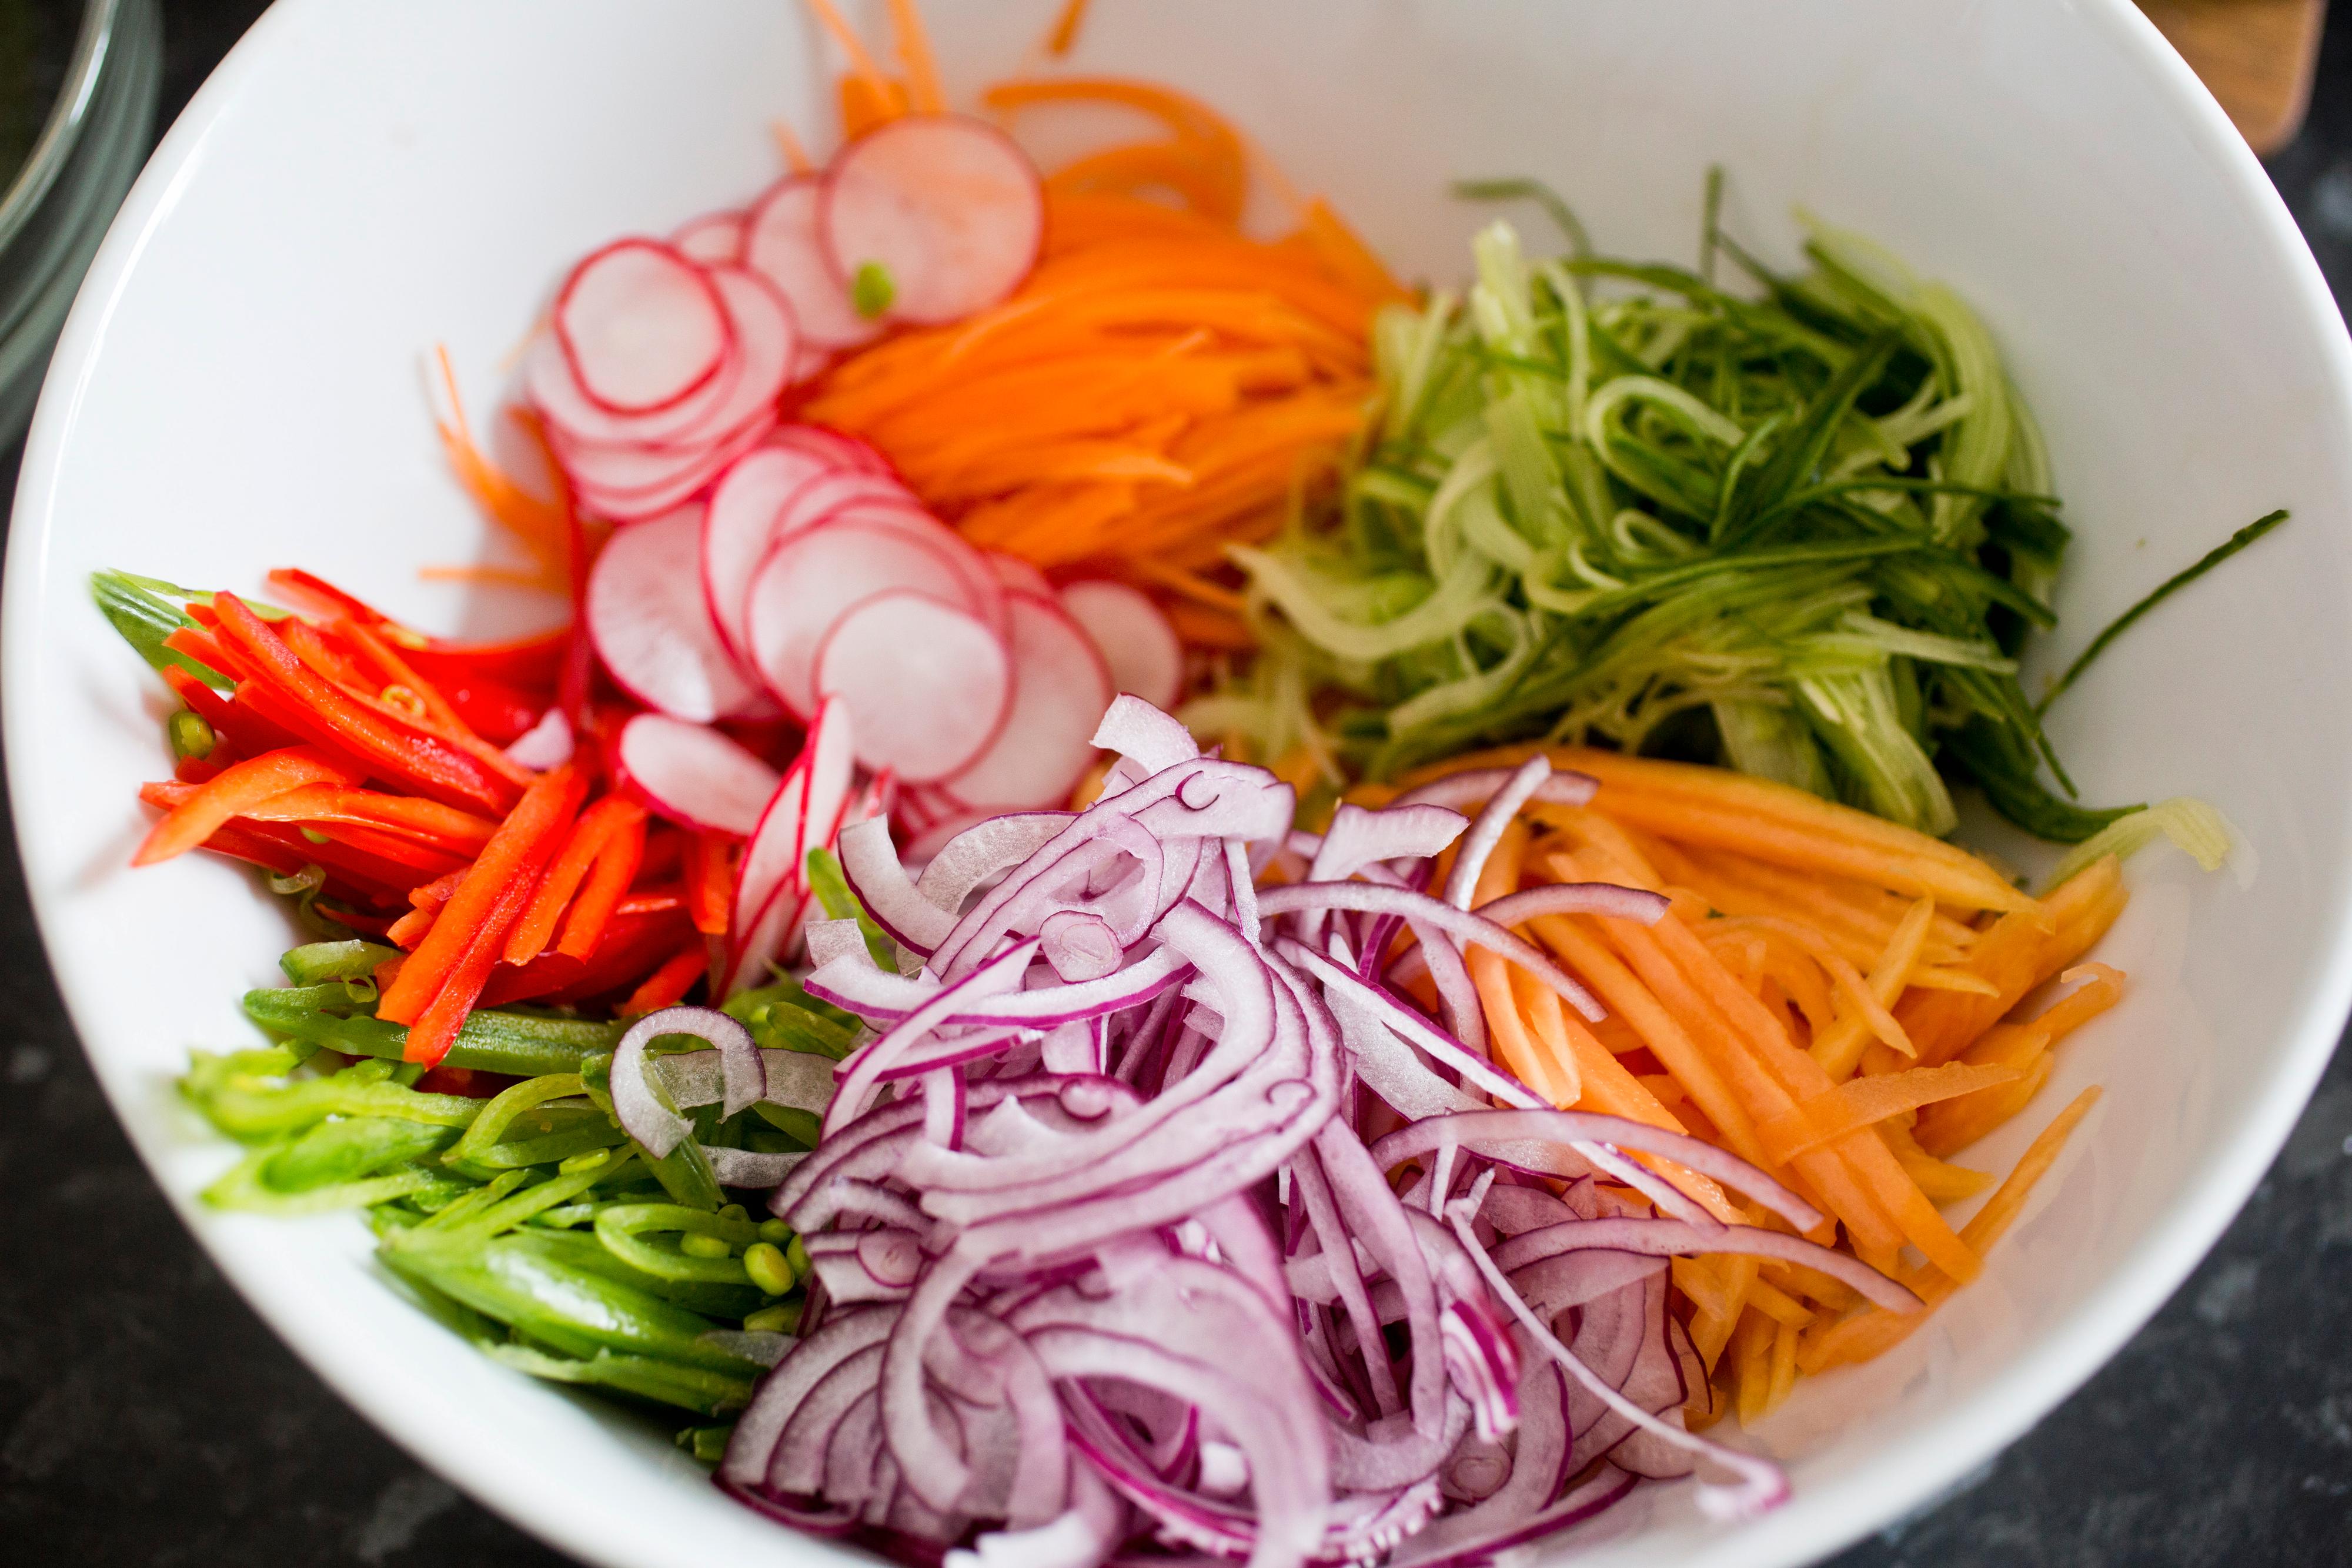 Skjær reddikene i tynne skiver. Bland alle grønnsakene i en bolle og tilsett dressing og friske urter.